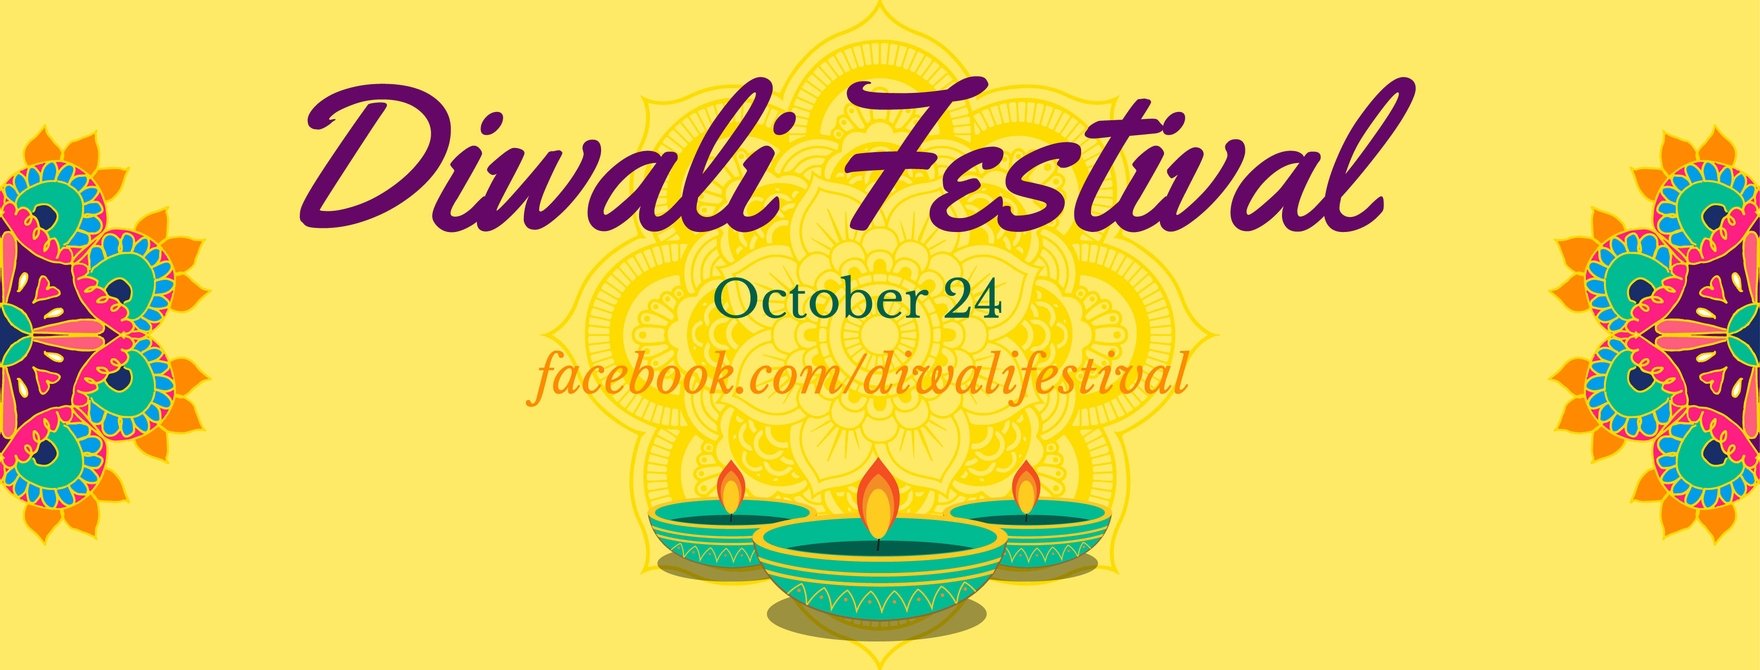 Diwali Facebook Cover Banner in Illustrator, PSD, EPS, SVG, JPG, PNG